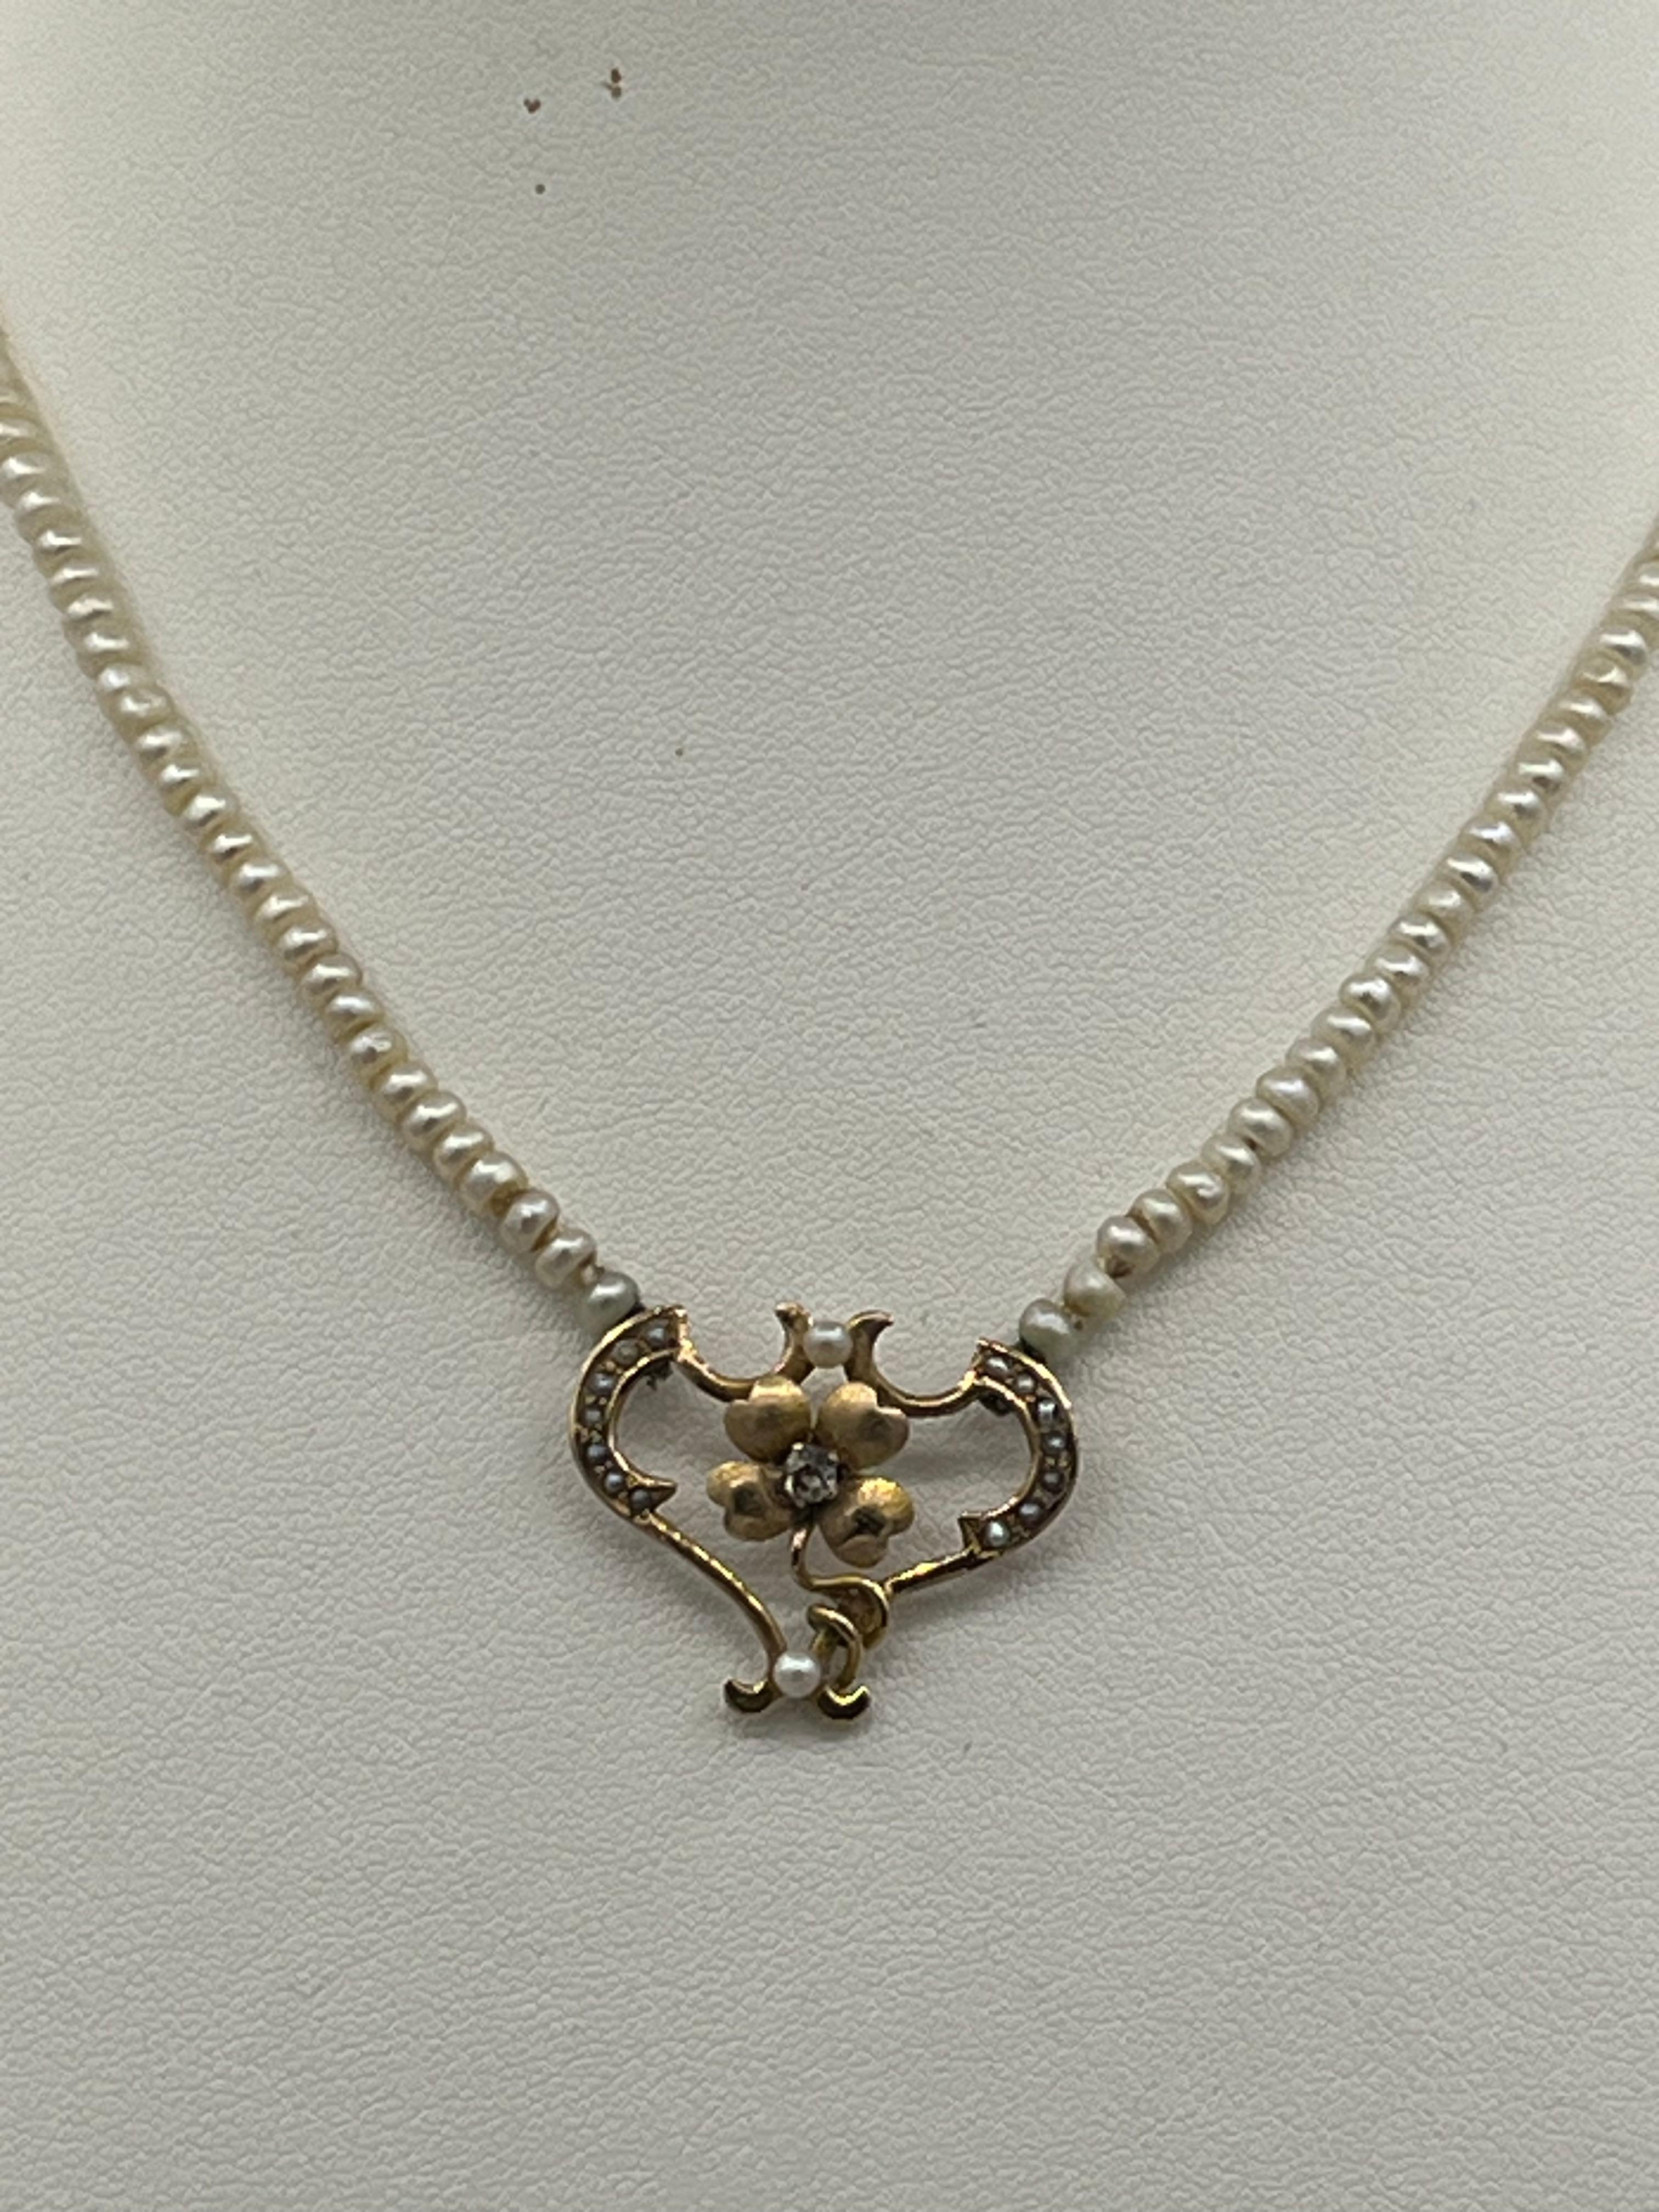 Women's Art nouveau necklace 18 k gold diamonds pearlchain